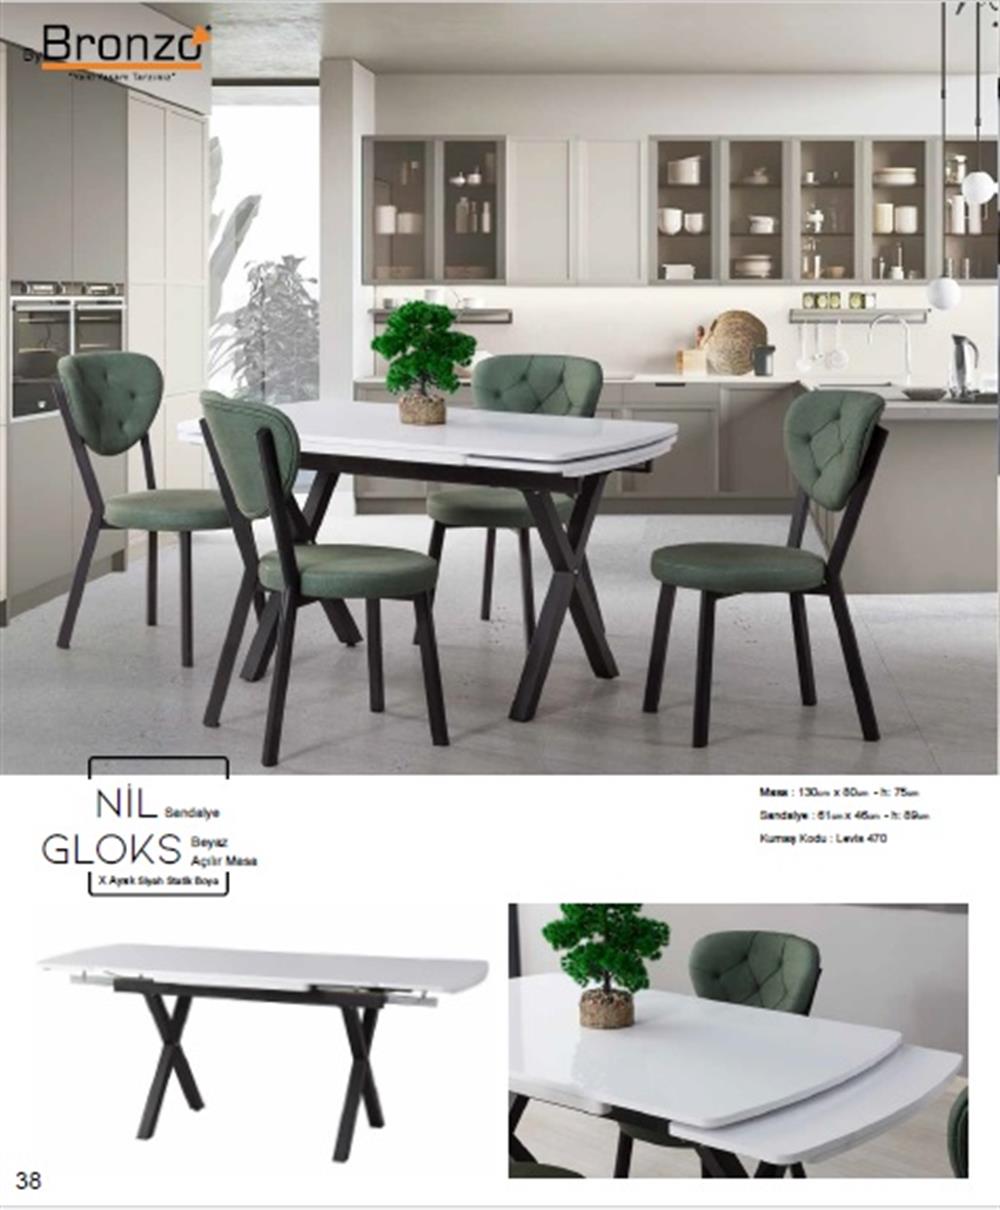 Bronzo NİL Sandalye - GLOKS Beyaz Açılır MasaTakımı, gri mermer masa  takımı, yemek masası takımı, emek masası özellikleri,, yemek masası  çeşitleri, Mutfak masası çeşitleri, Mutfak masası renkleri, Yemek masası  fiyatları, kütük yemek